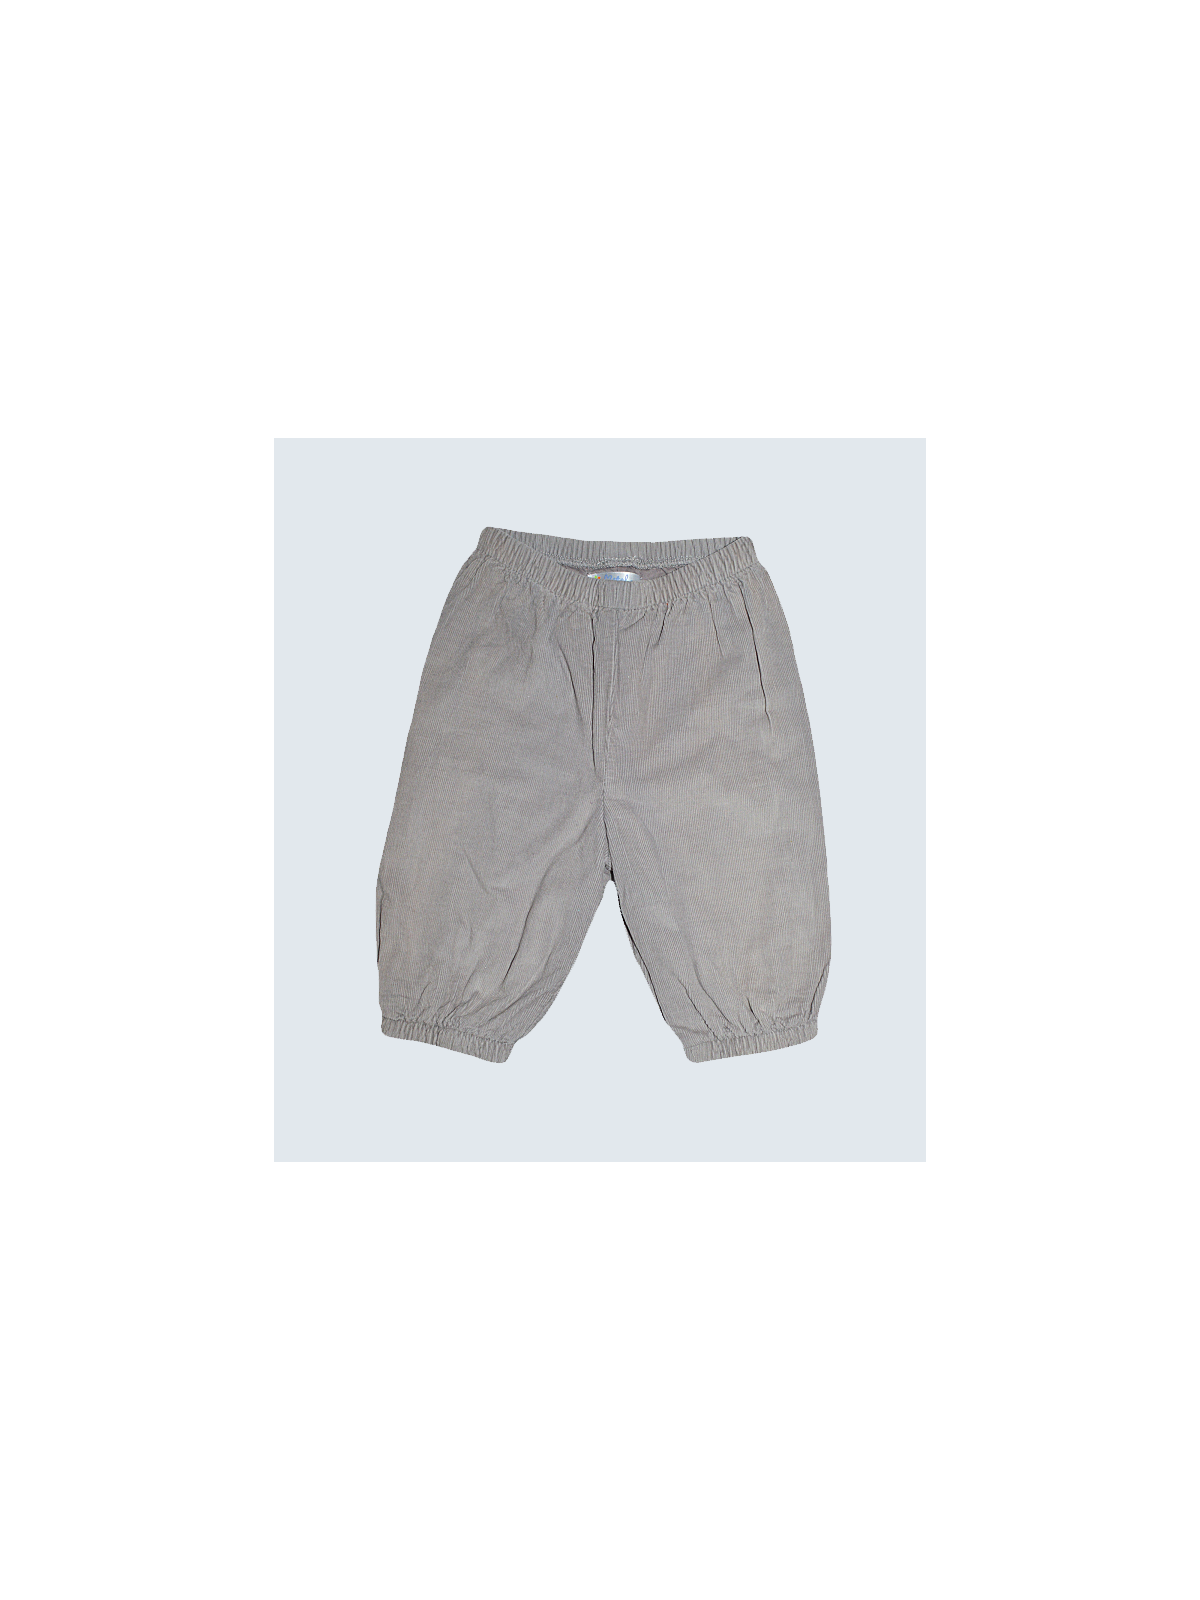 Pantalon Kitchoun - 6 Mois